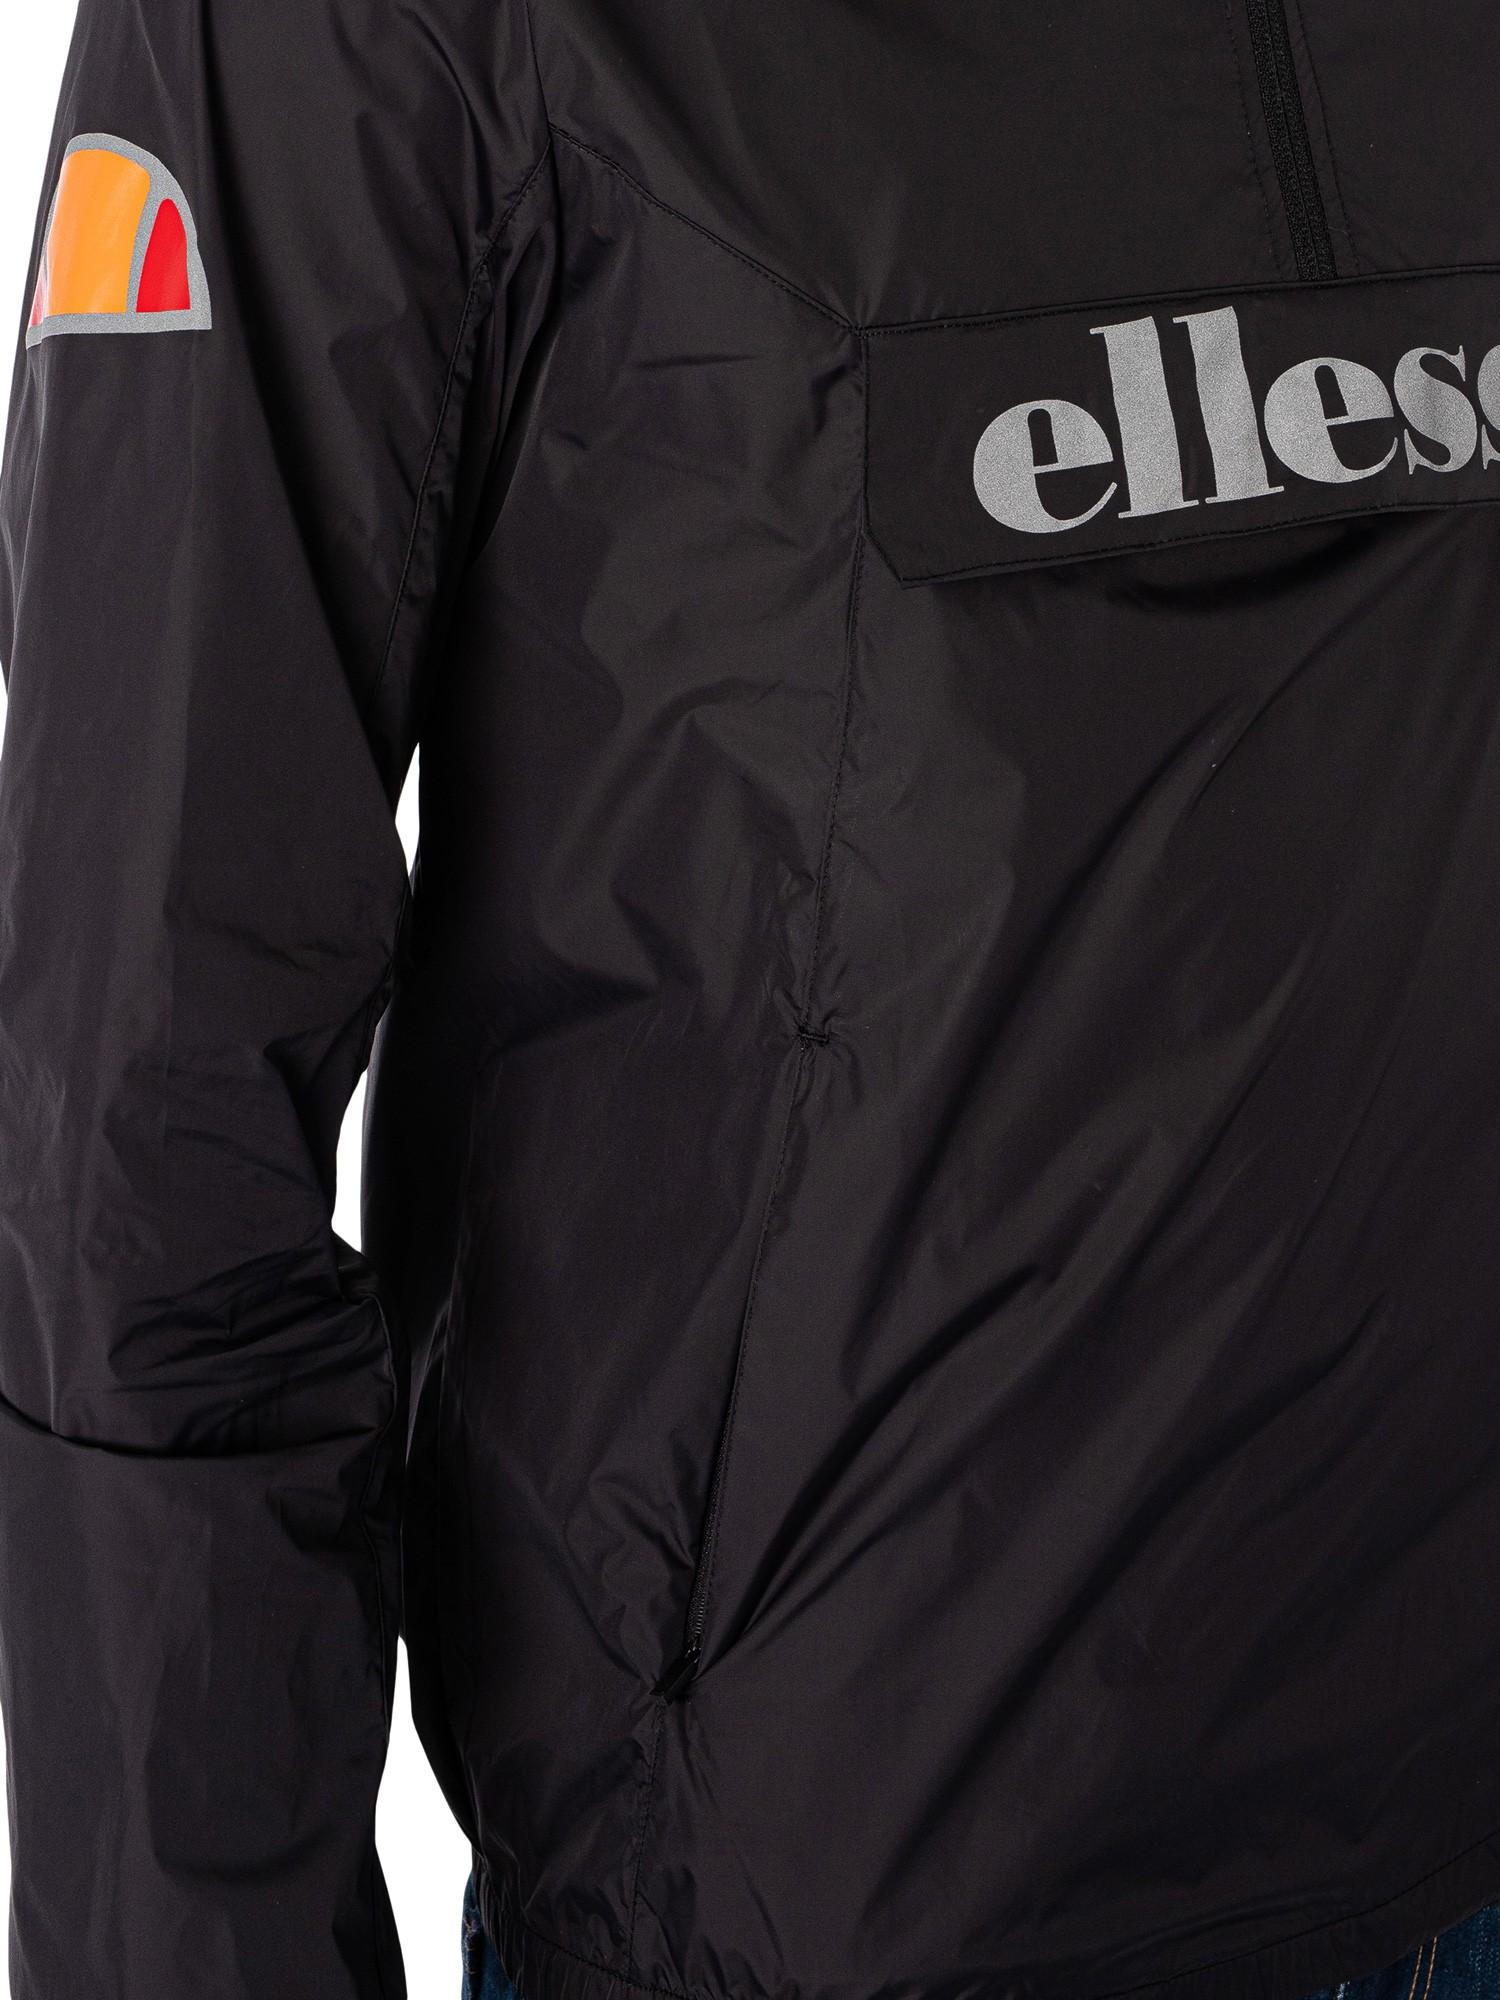 Ellesse Acera Pullover Jacket in Black for Men | Lyst